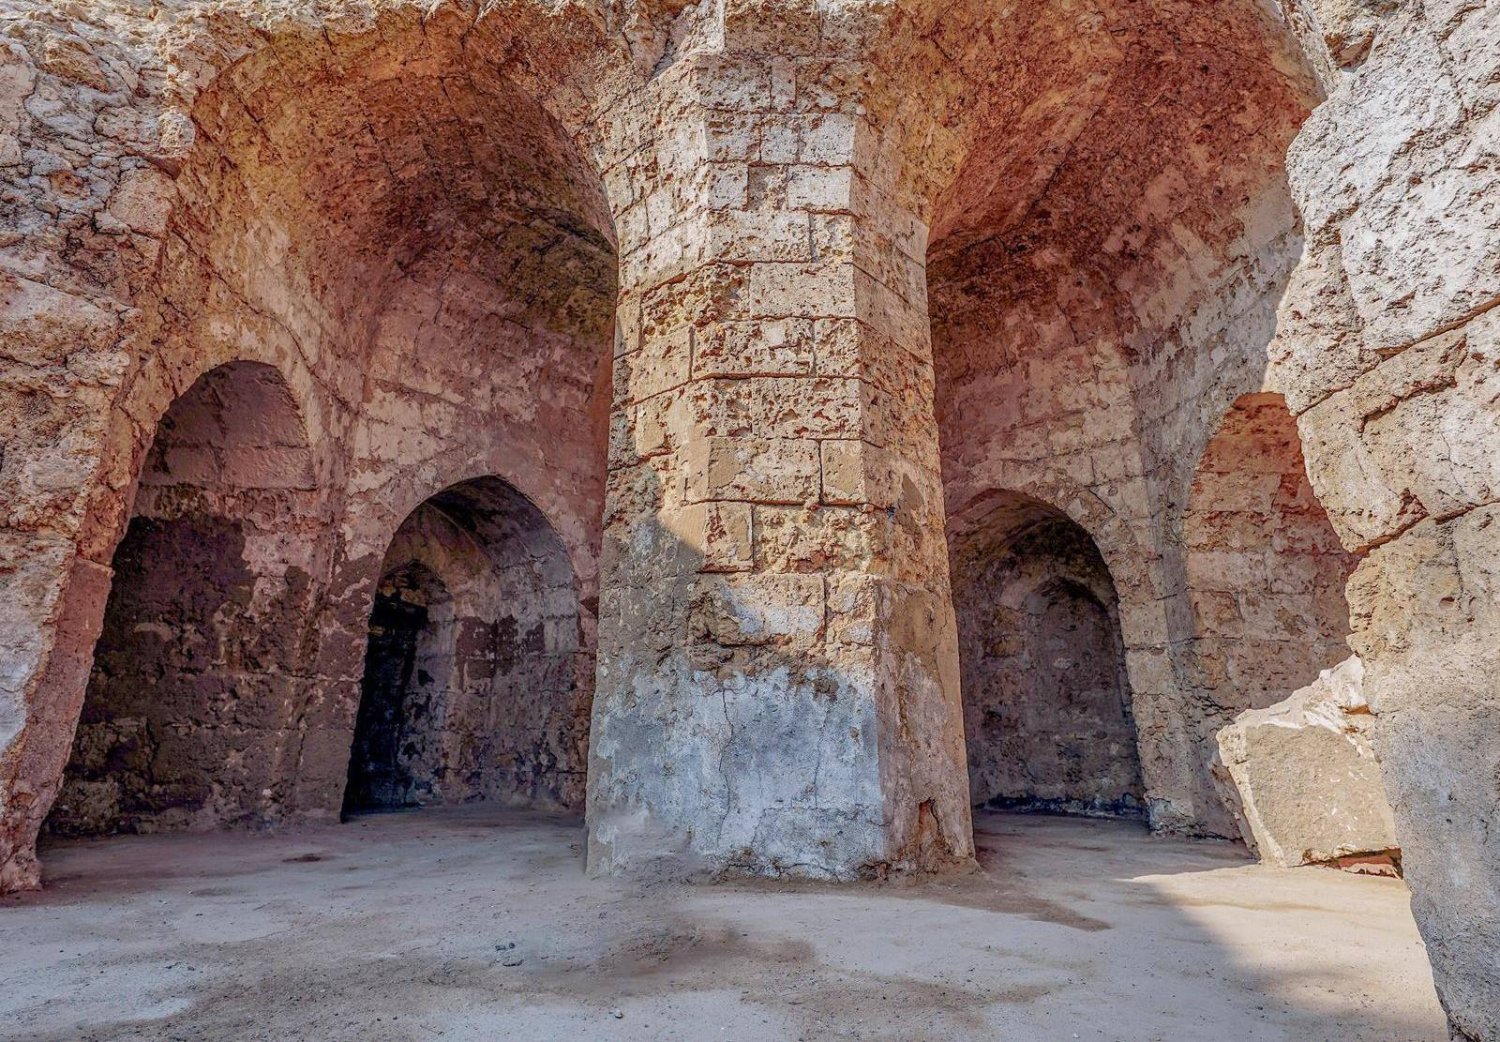 كشفت الدراسات في مسجد عثمان بن عفان عن مواد أثرية يعود أقدمها إلى القرنين السابع والثامن الميلادي (واس)